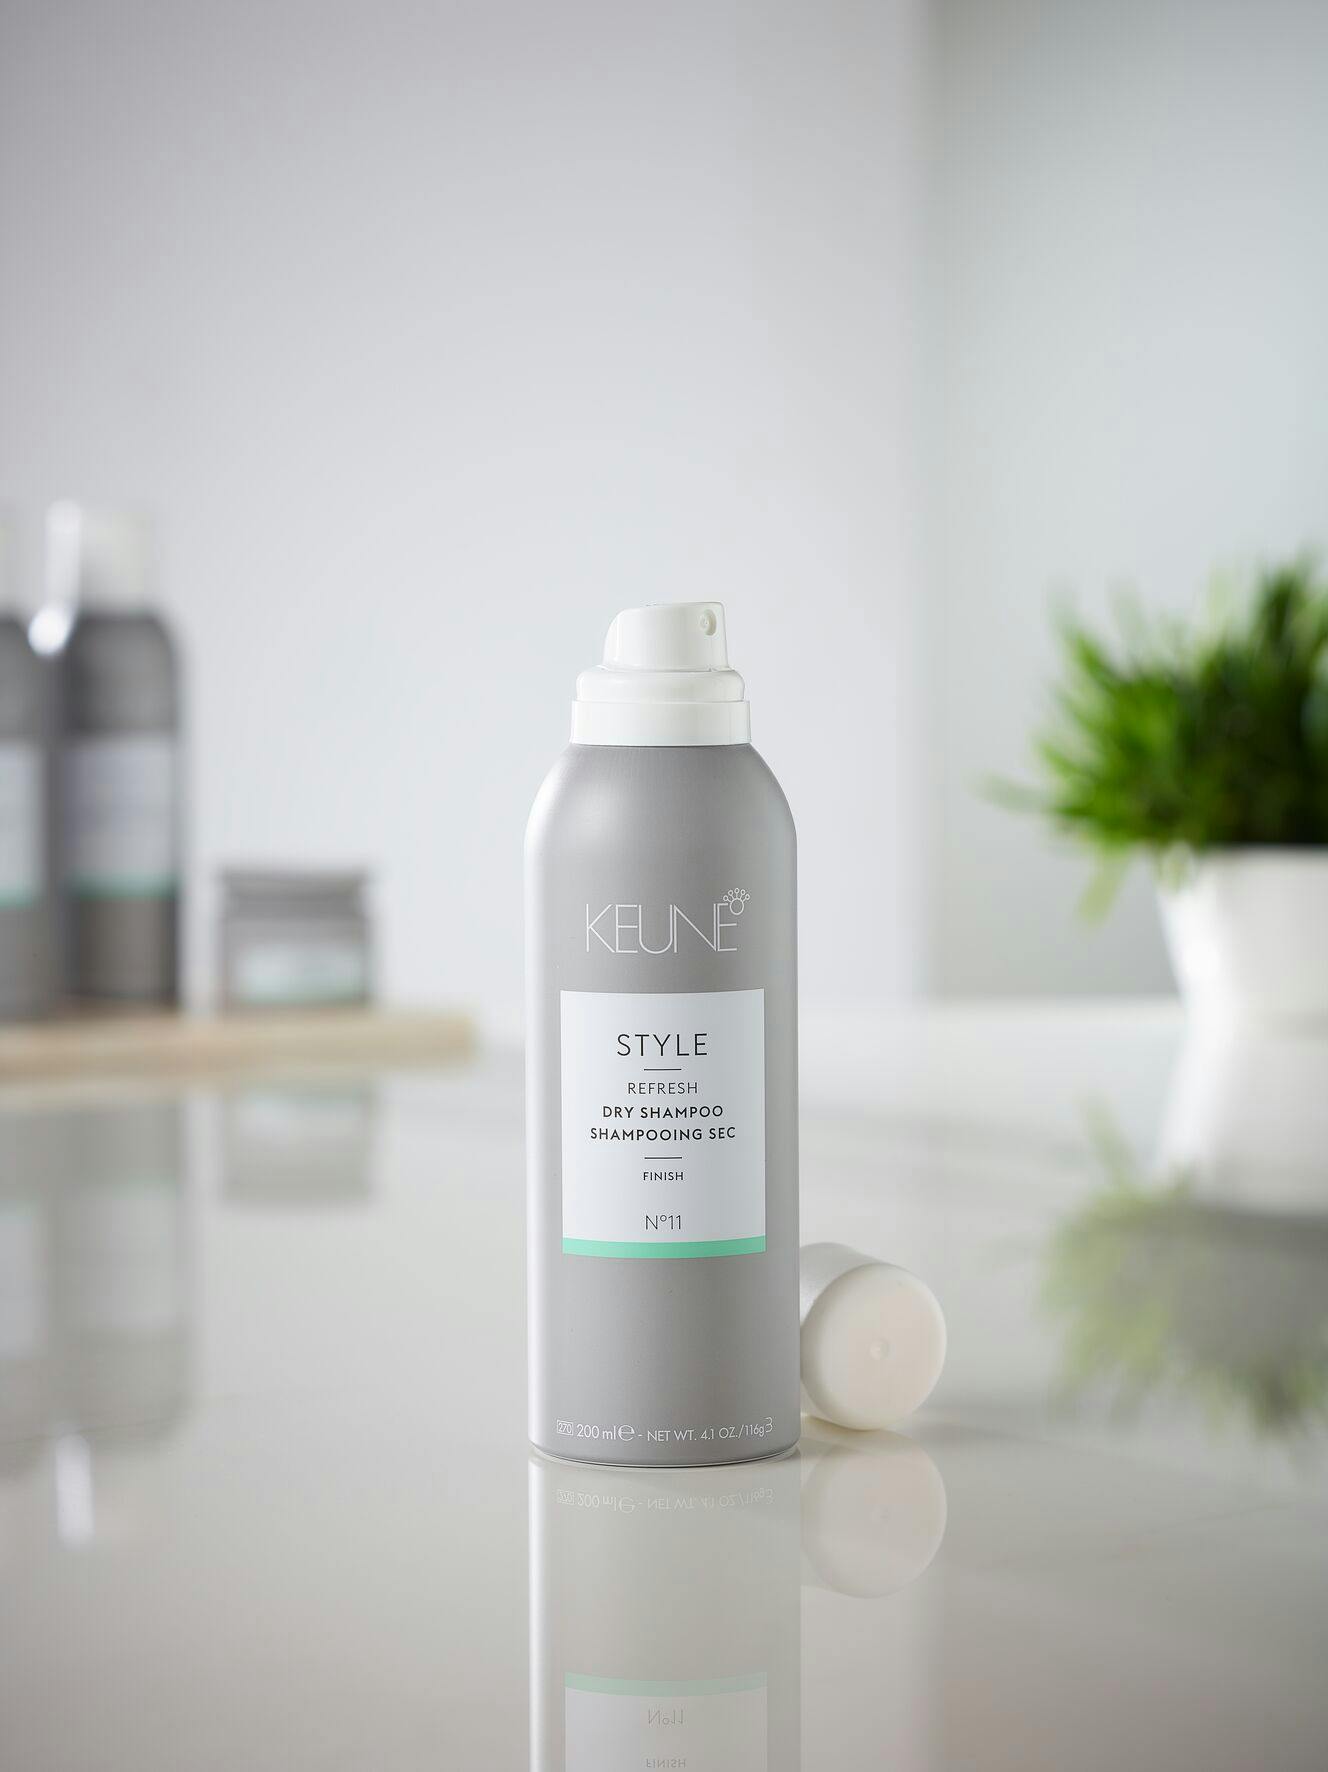 Image of spray bottle Keune Style Dry Shampoo